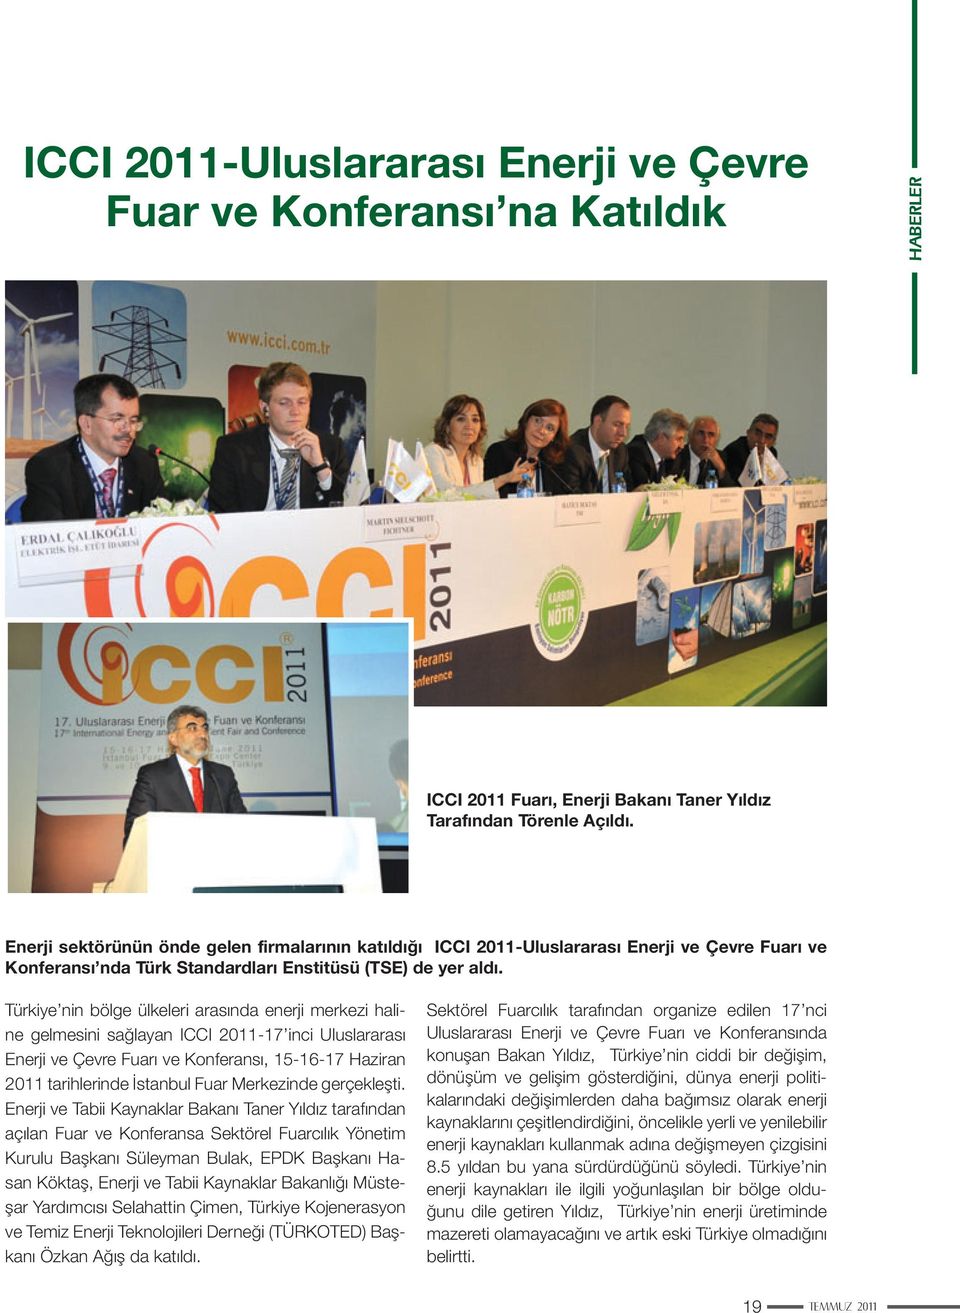 Türkiye nin bölge ülkeleri arasında enerji merkezi haline gelmesini sağlayan ICCI 2011-17 inci Uluslararası Enerji ve Çevre Fuarı ve Konferansı, 15-16-17 Haziran 2011 tarihlerinde İstanbul Fuar